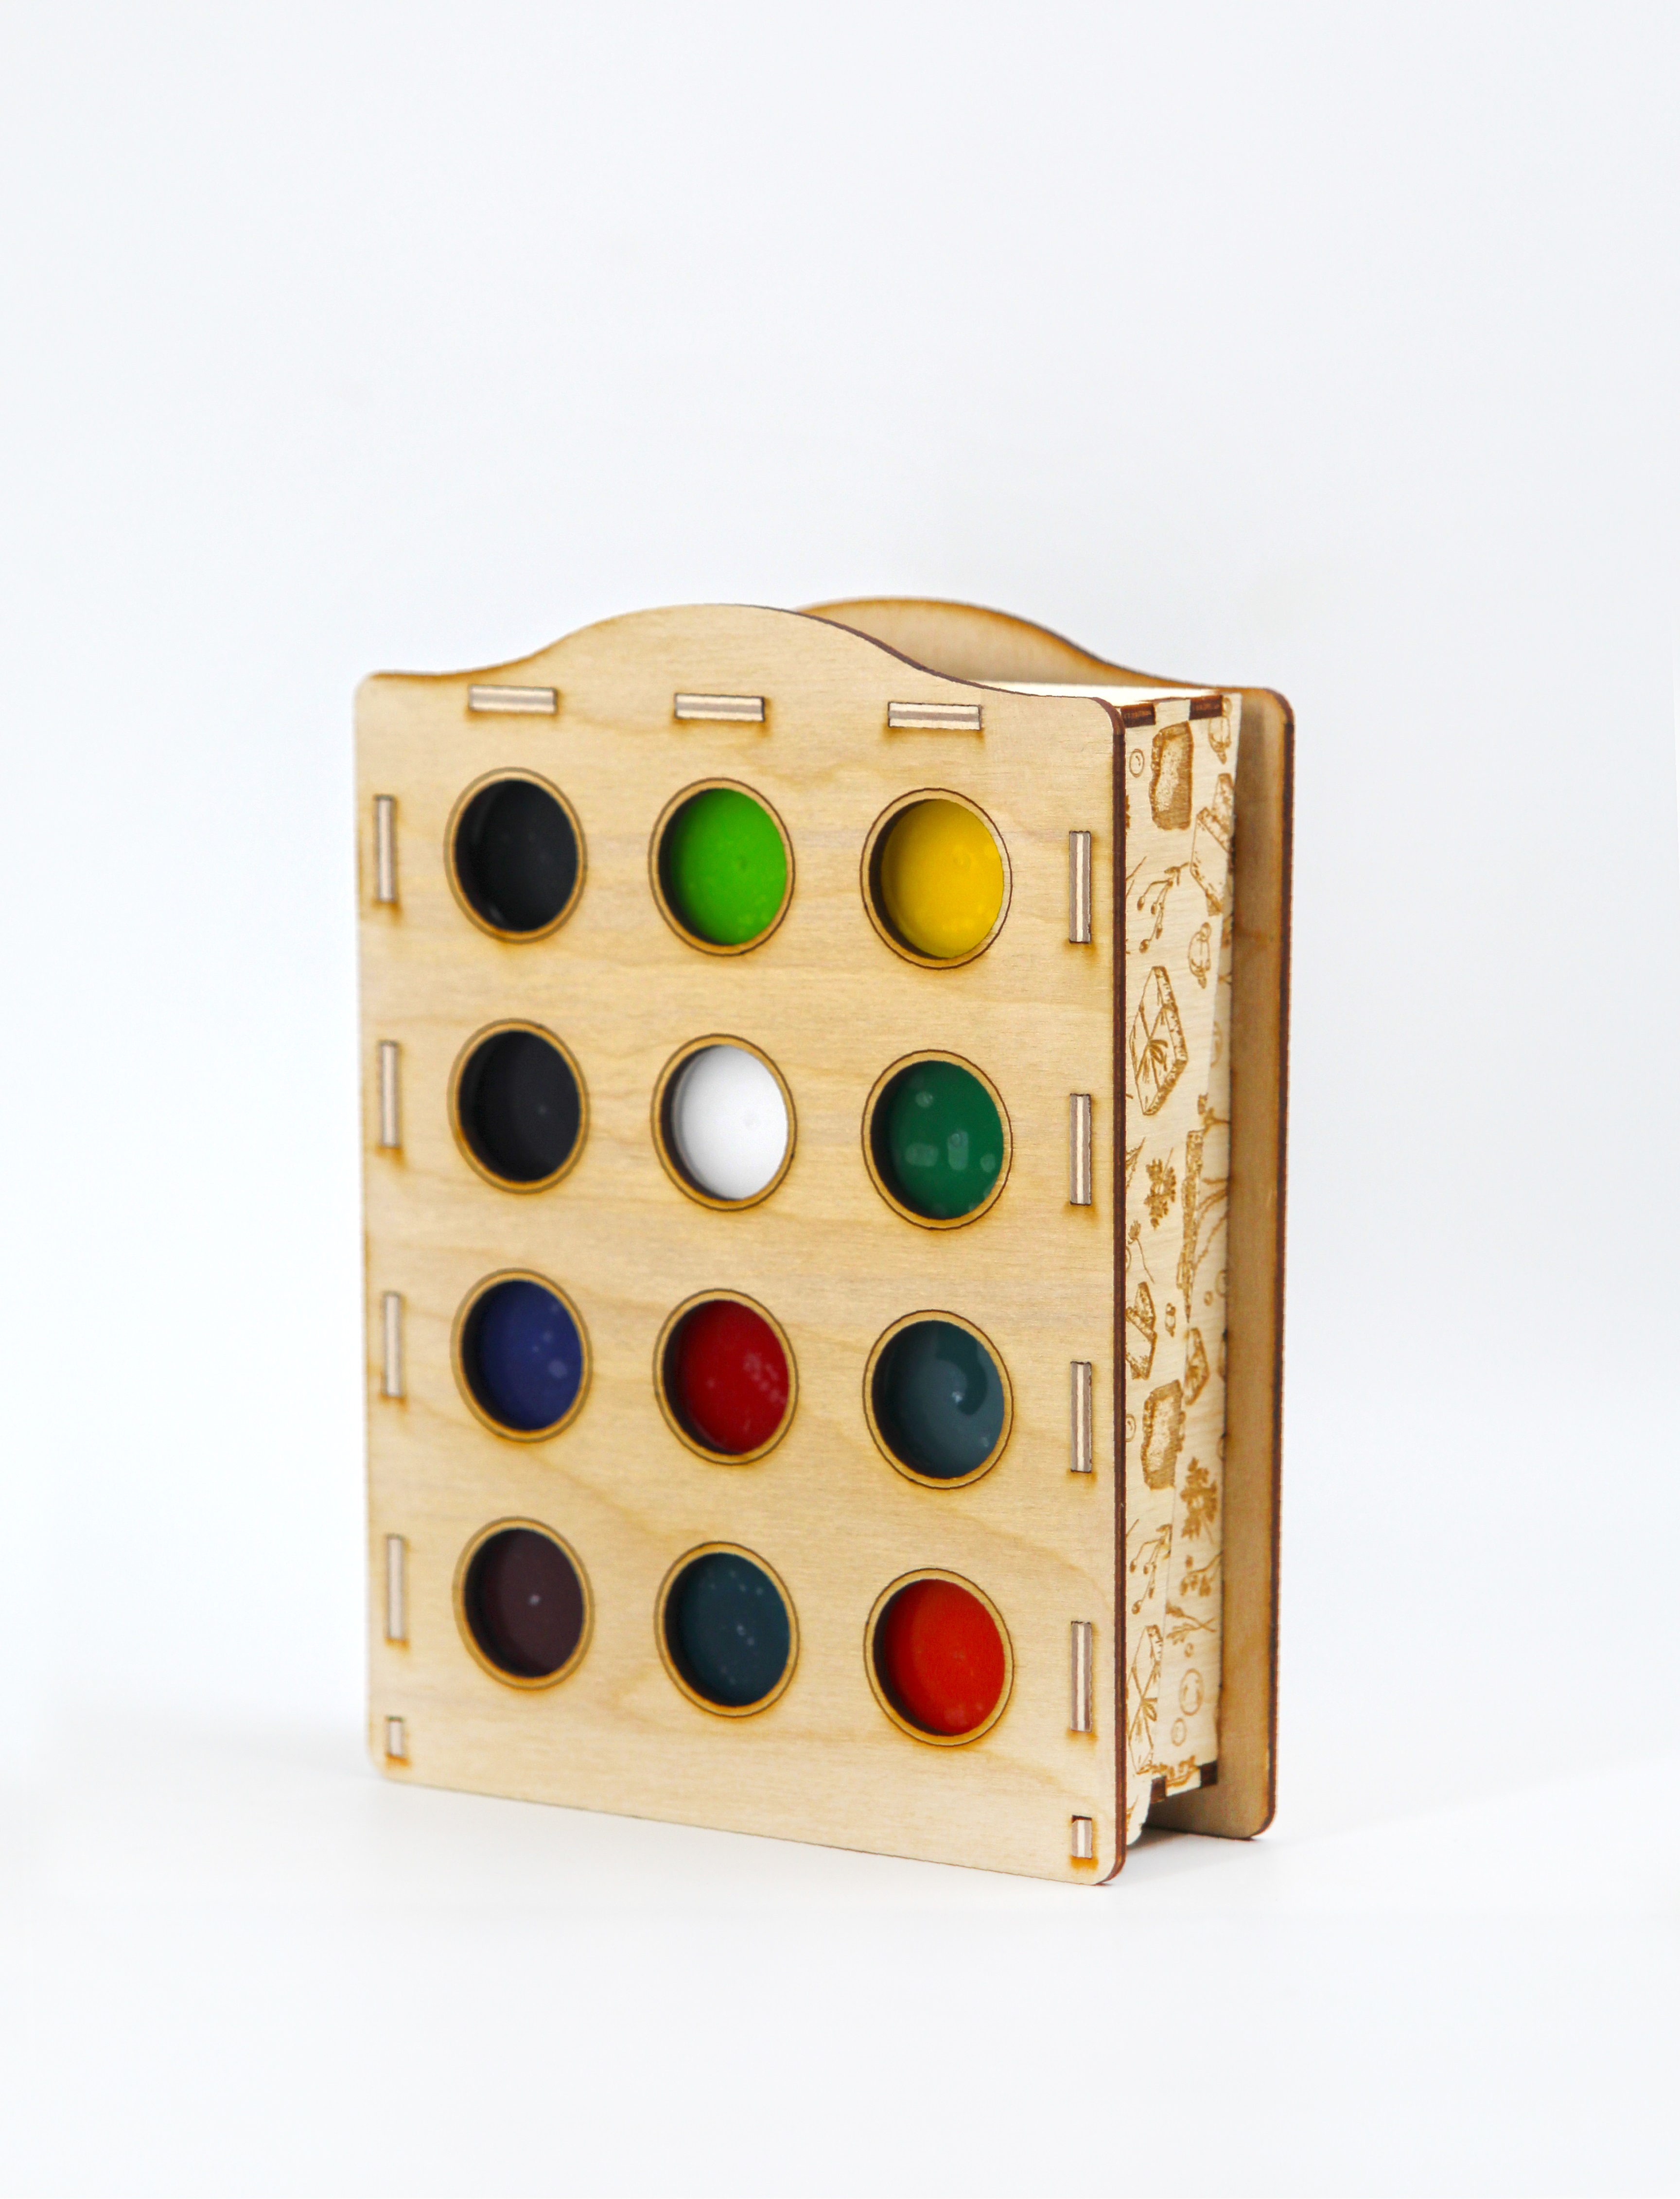 Краситель немигрирующий Выдумщики КОЛОРУС 12 цветов по 20 гр амм комплект в деревянной коробочке - фото 2